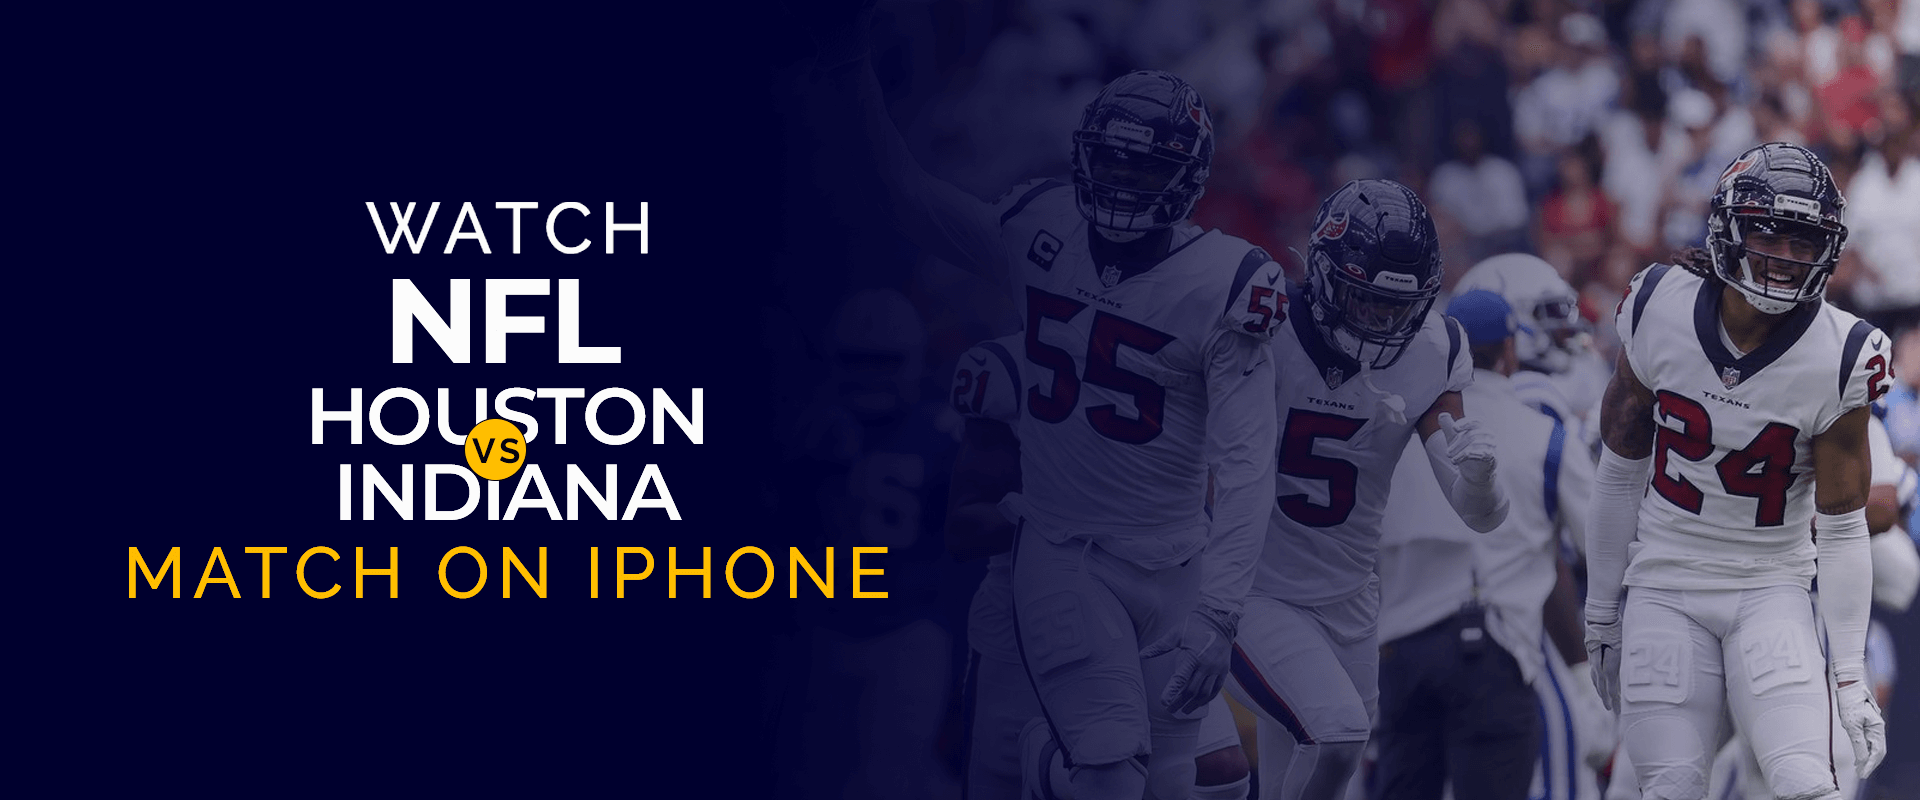 Sehen Sie sich das Spiel NFL Houston vs. Indiana auf dem iPhone an